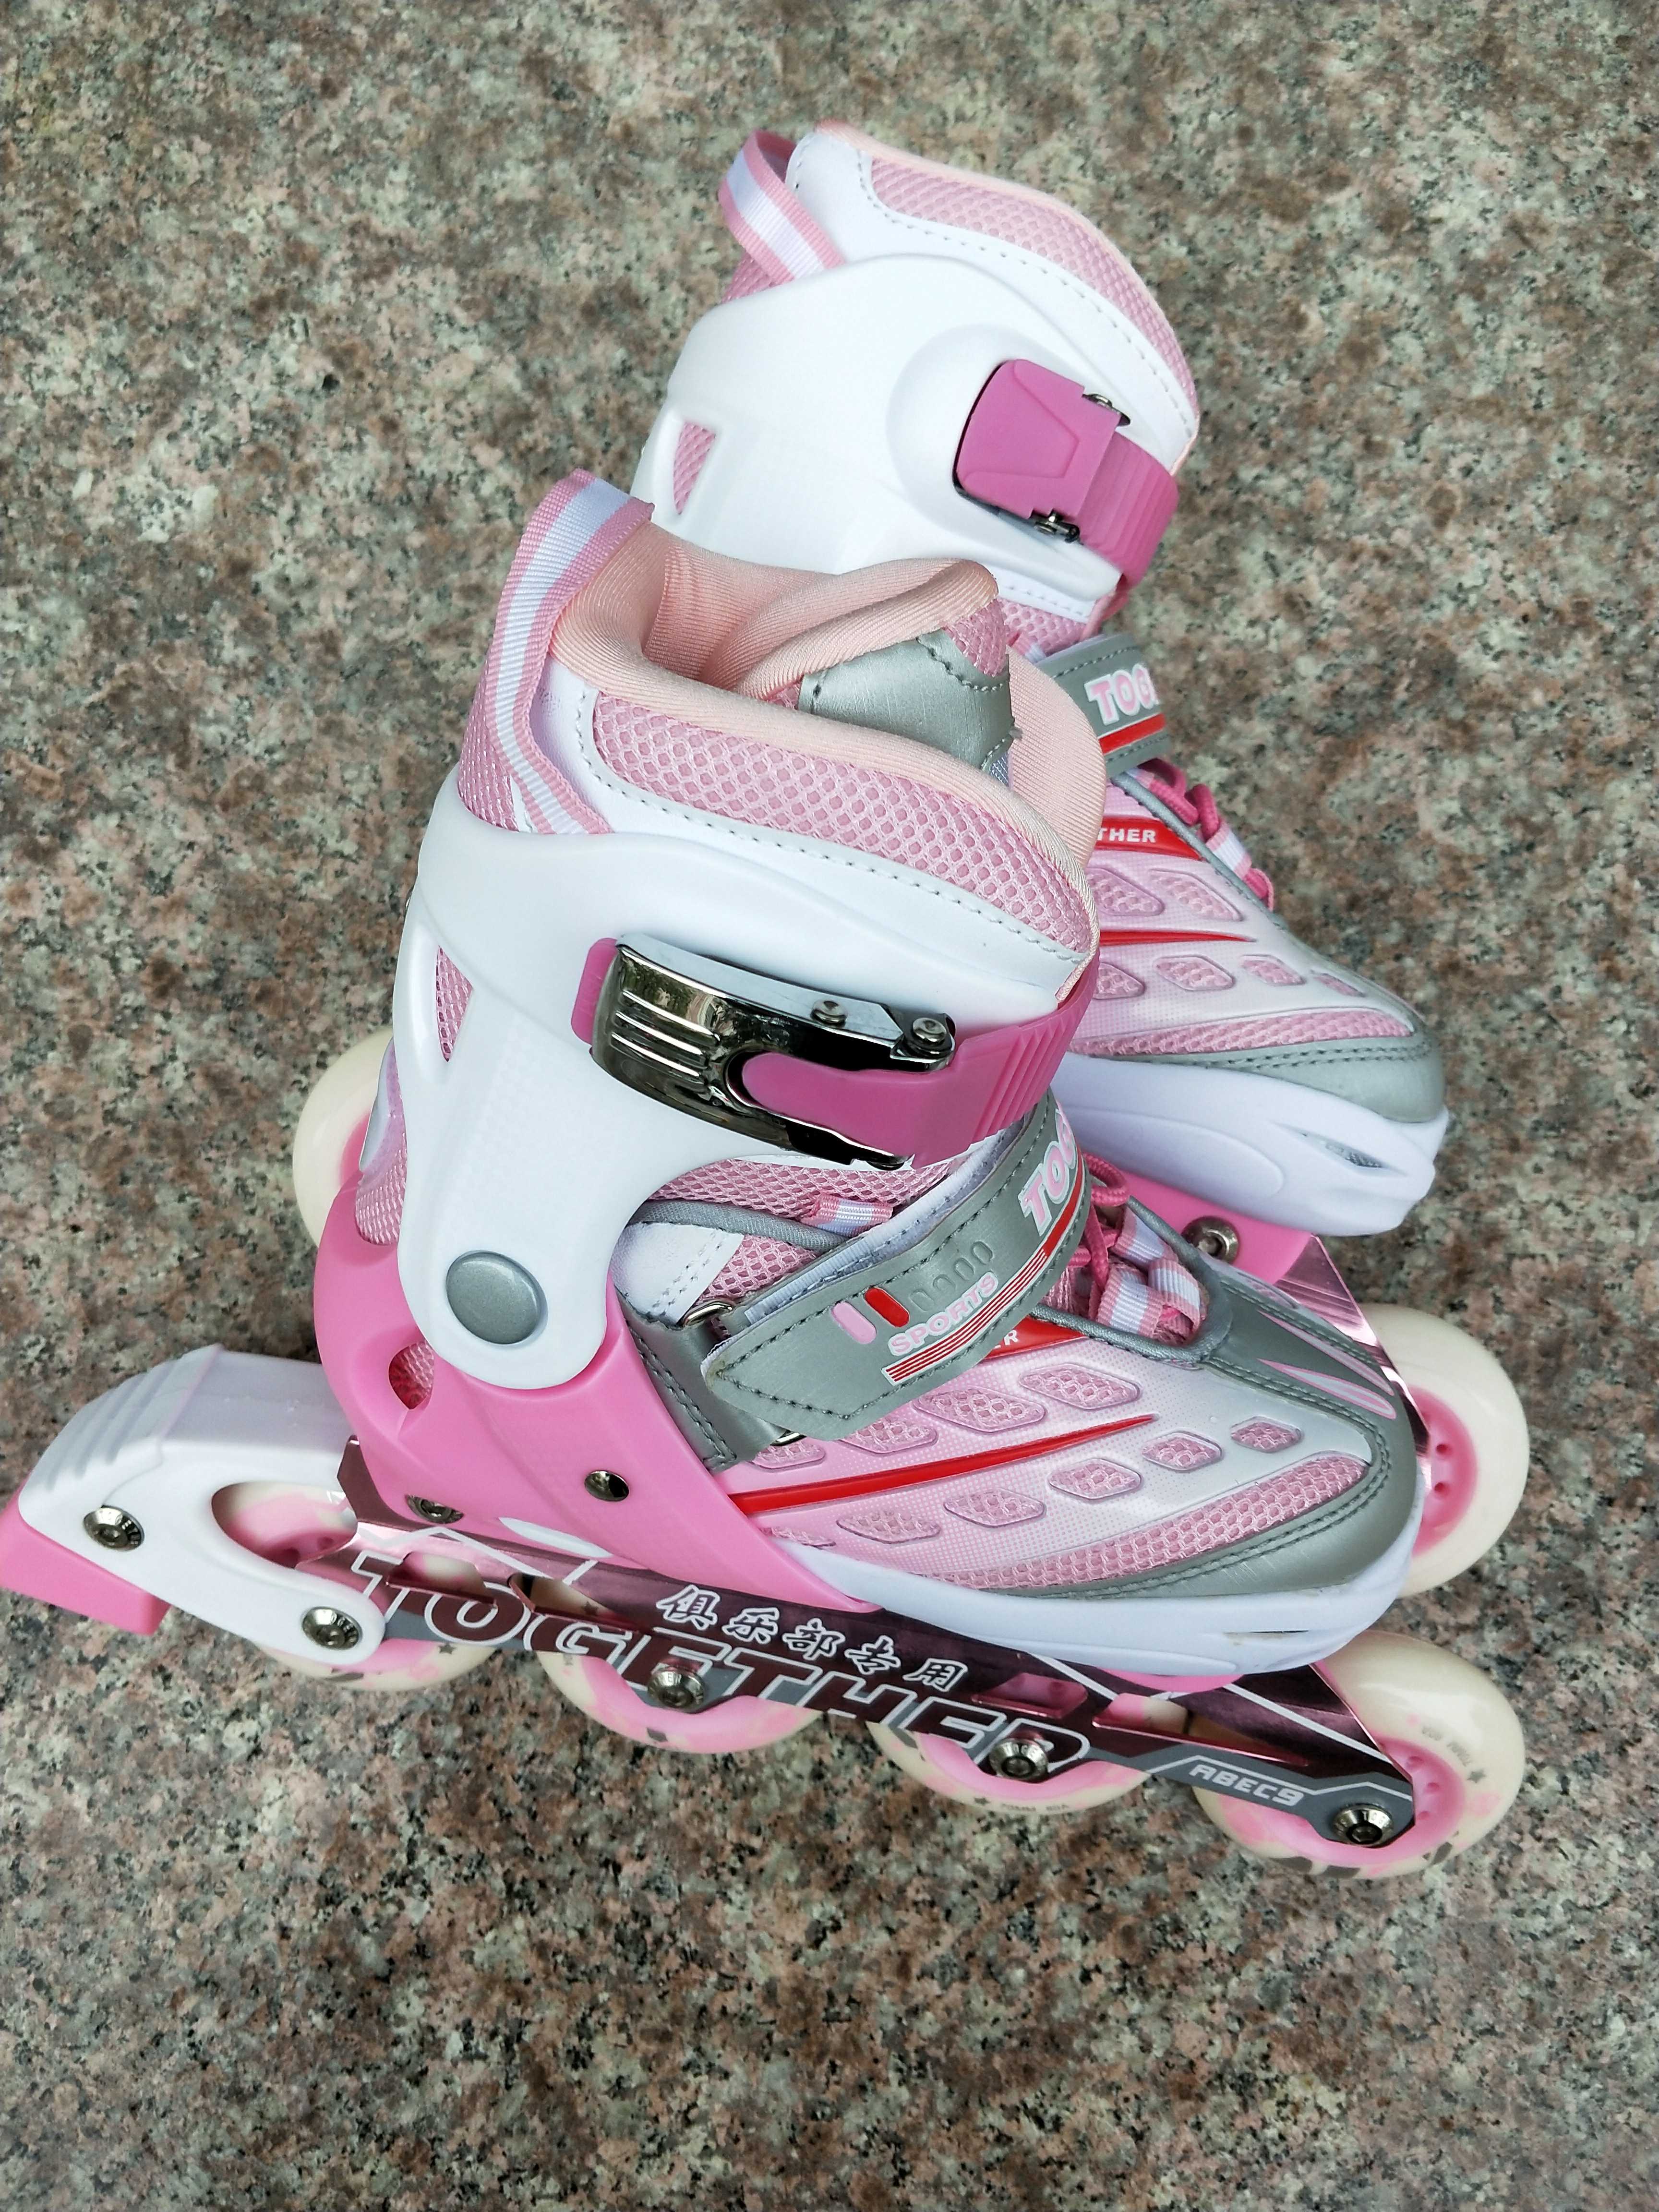 屹琪轮滑溜冰鞋儿童全套装小孩初学者俱乐部可调旱冰直排男童女童